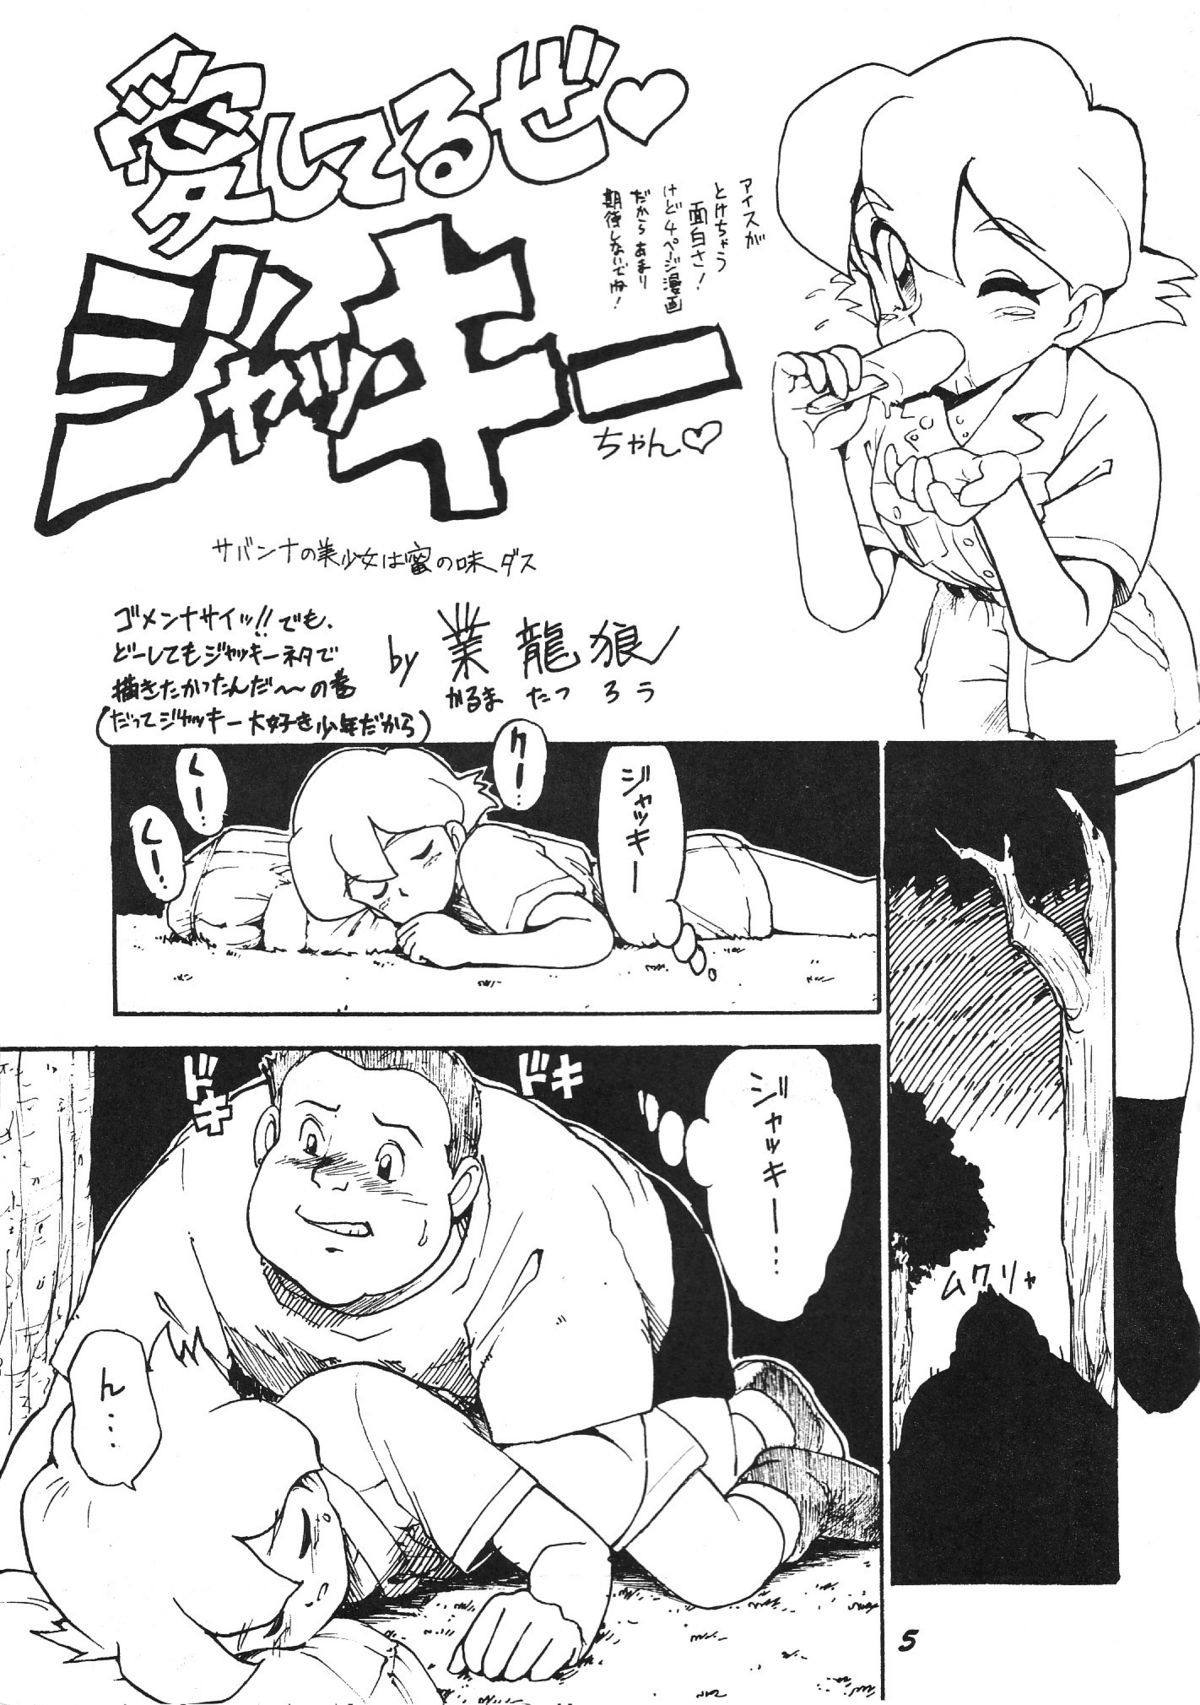 (CR15) [Karmaya (Karma Tatsurou)] Kaniku (Various) page 5 full